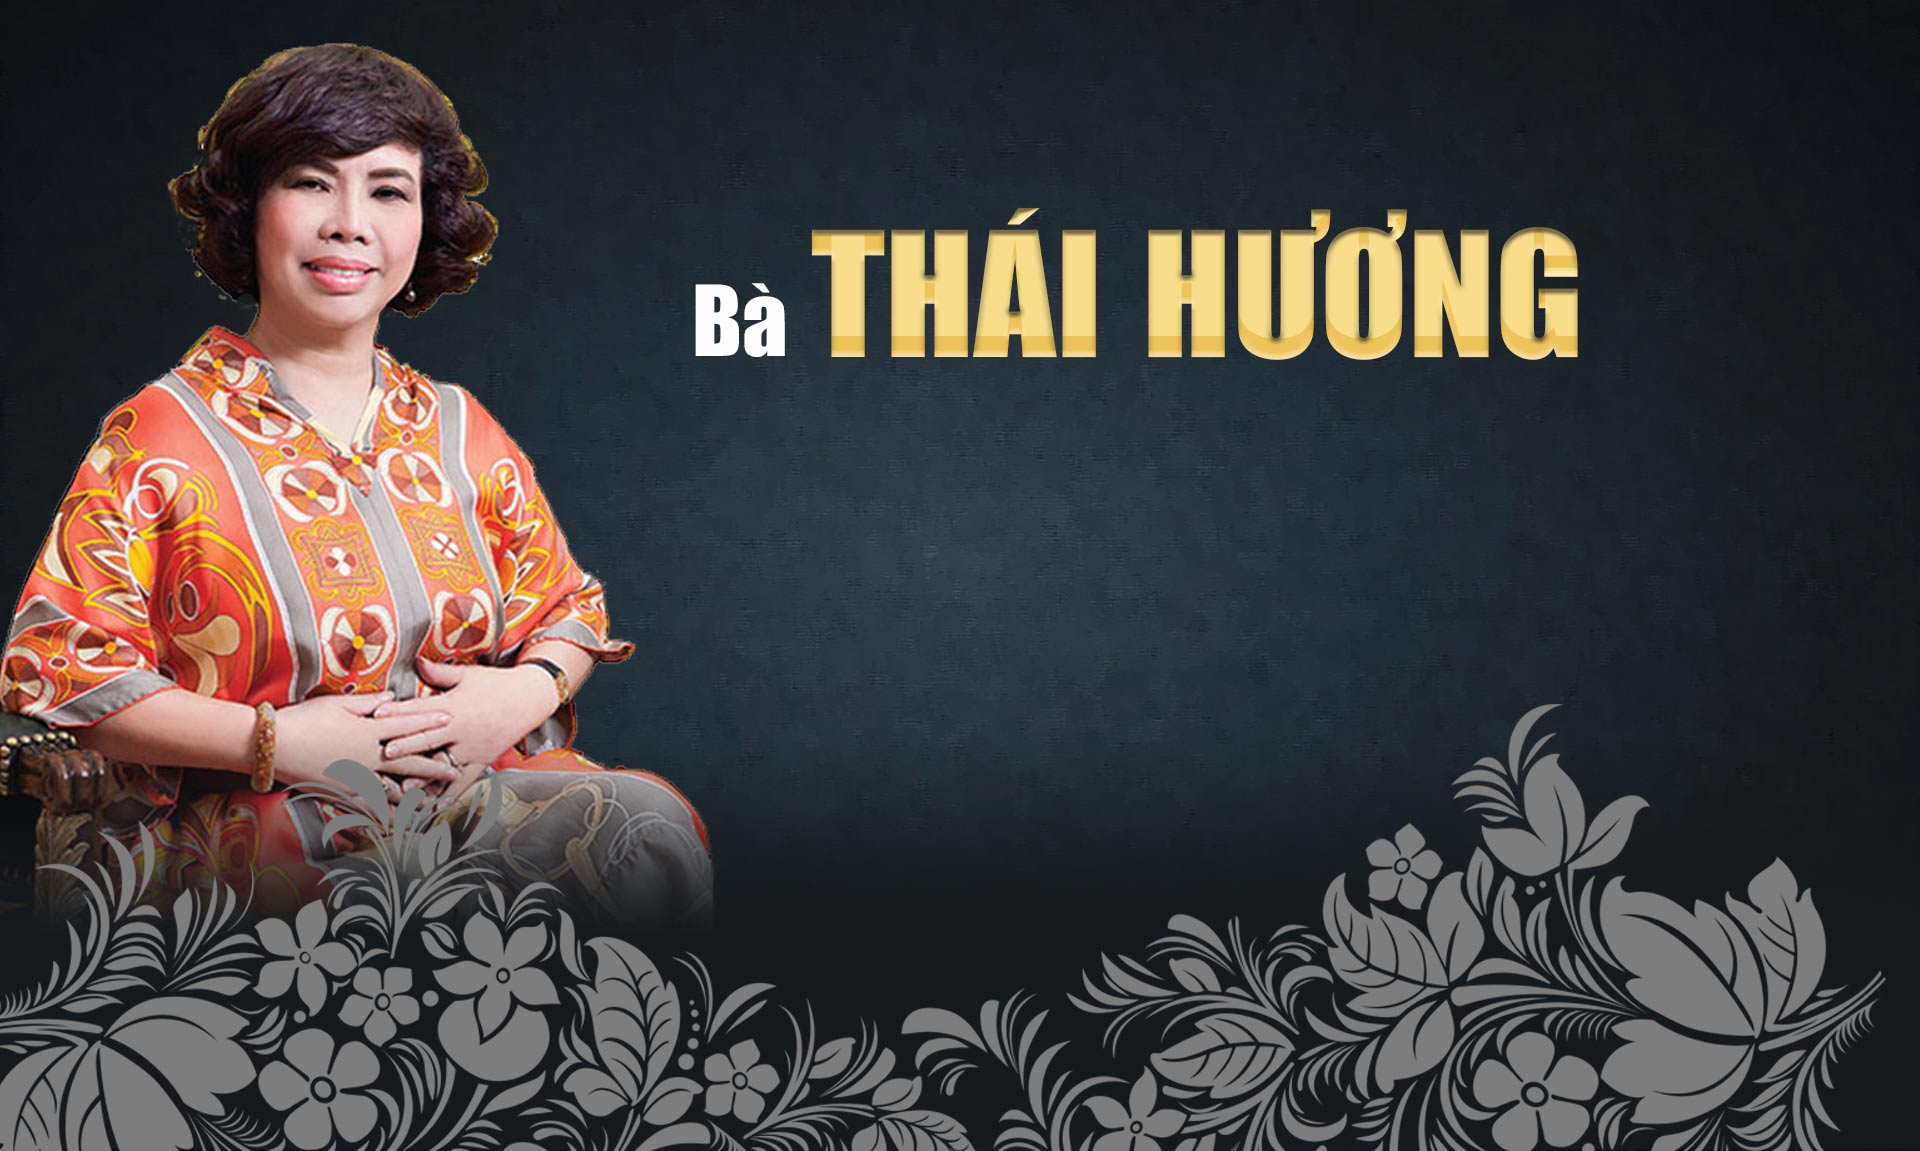 10 phụ nữ Việt gây choáng bởi sự giàu có, giỏi giang và quyền lực - 18